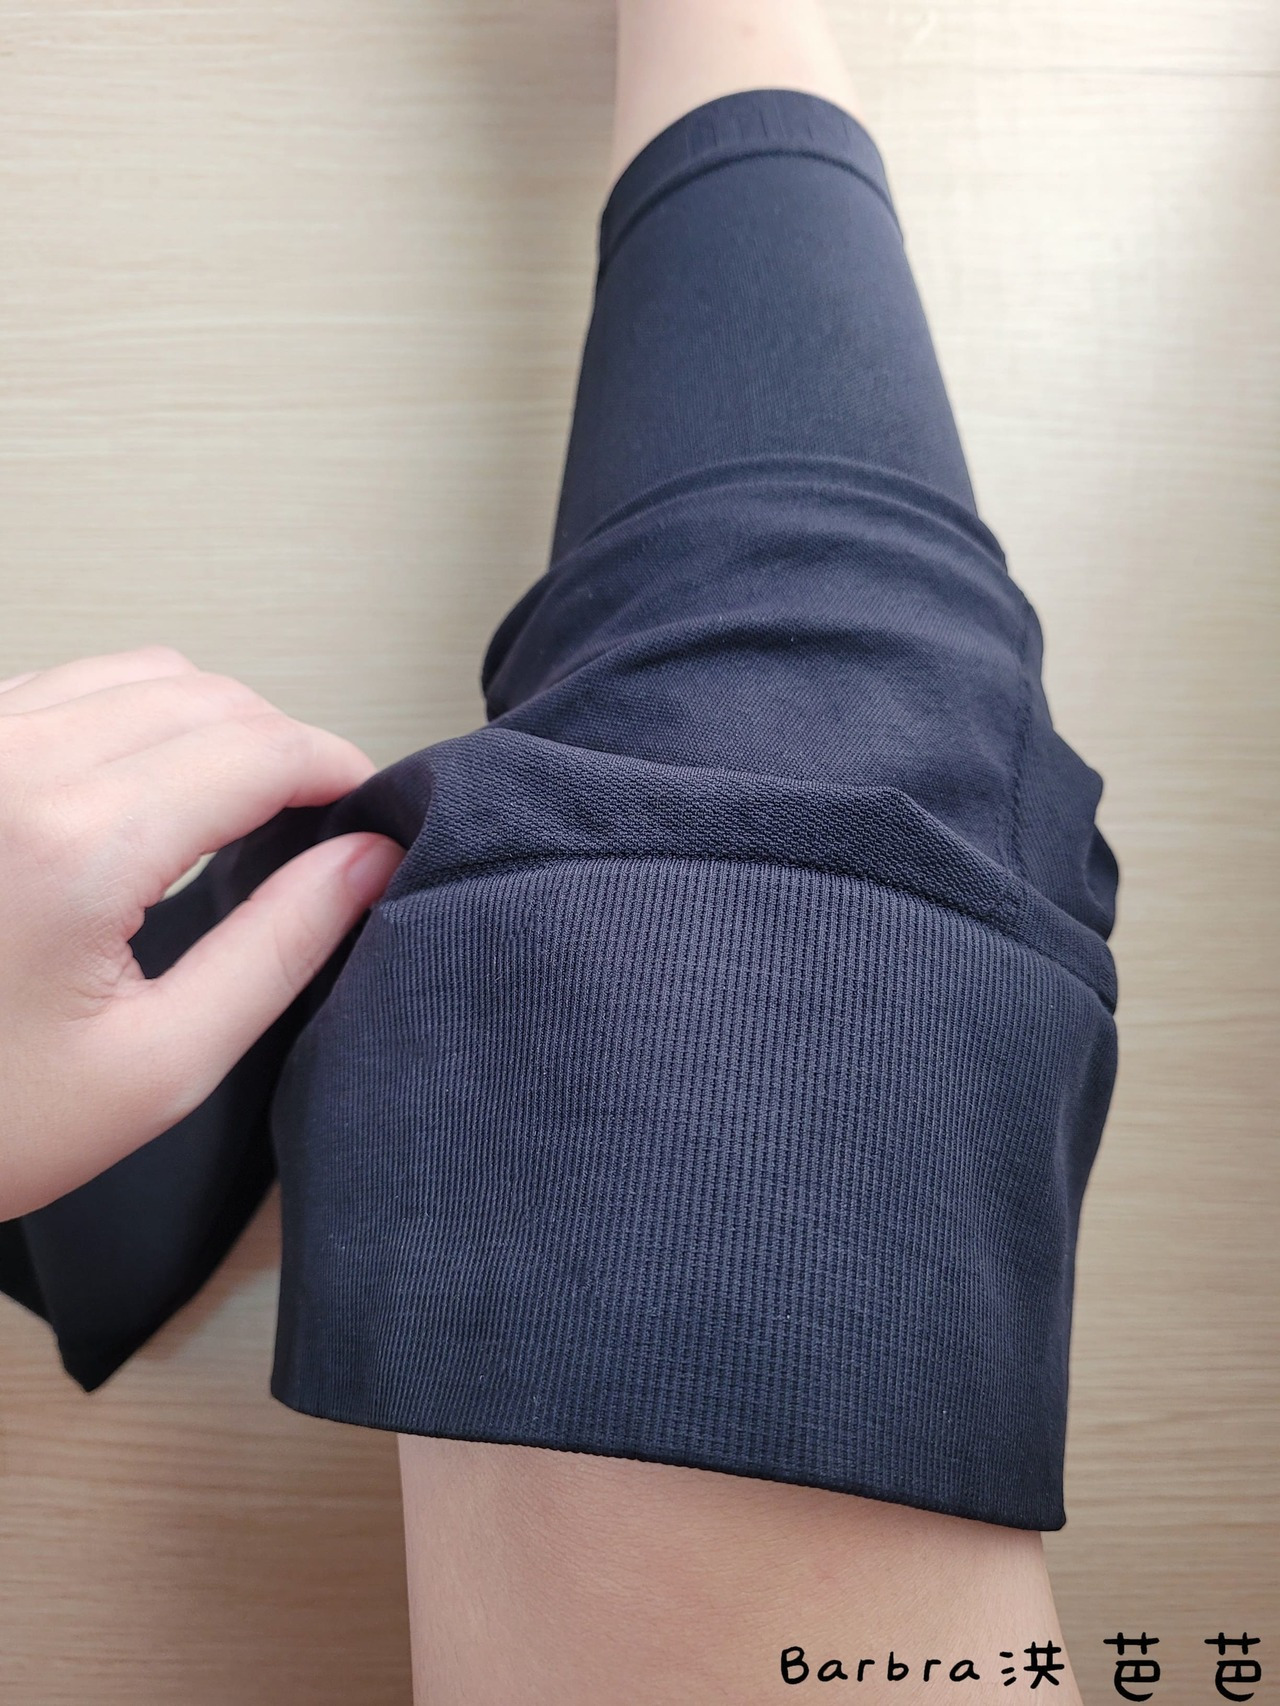 美敷肌能褲將車縫線最少化，防止因為縫線摩擦而產生皮膚過敏及紅腫問題，讓穿著不再是阻礙